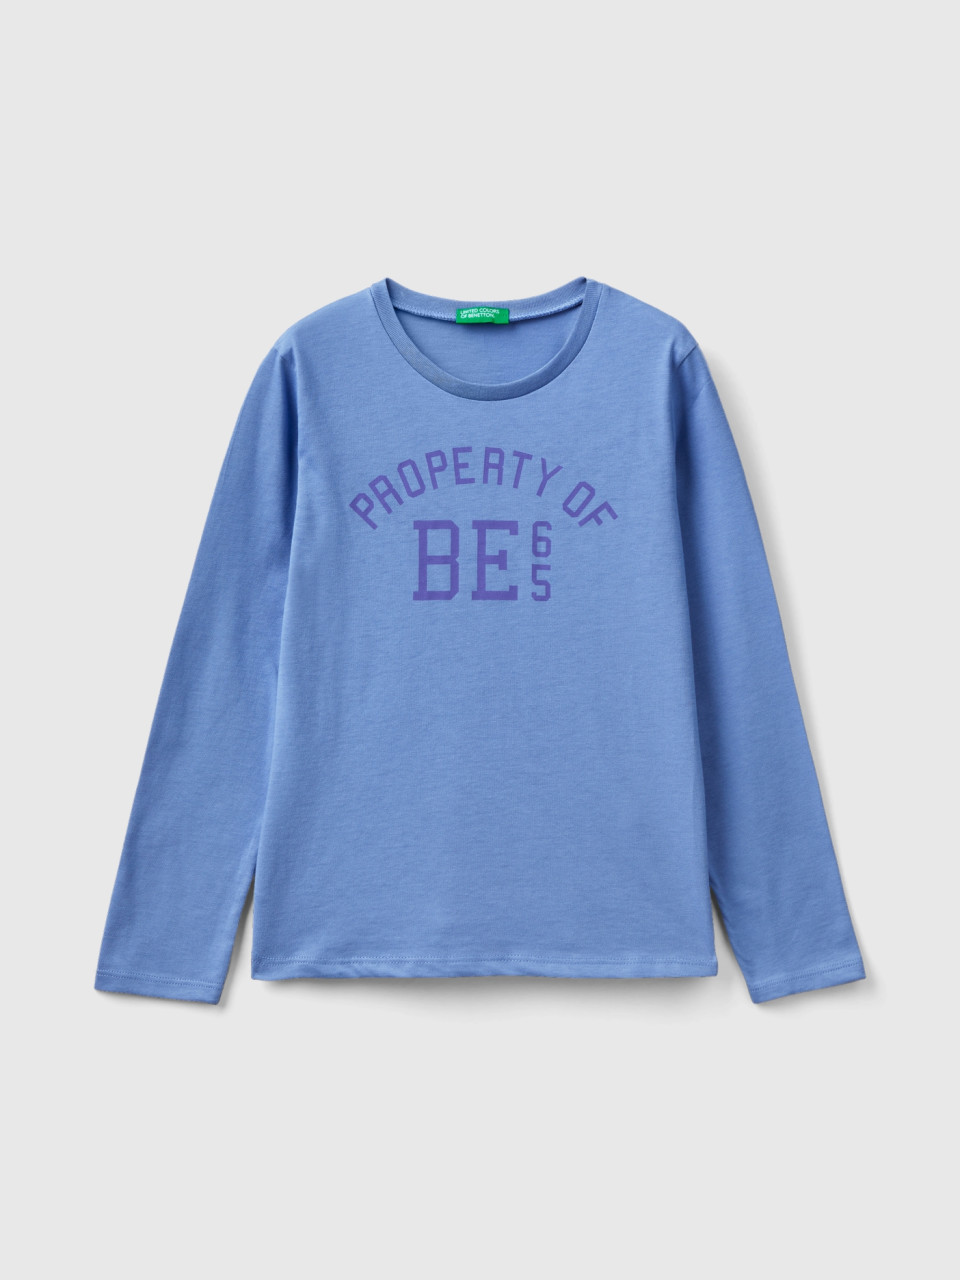 Benetton, T-shirt With Text Print, Light Blue, Kids